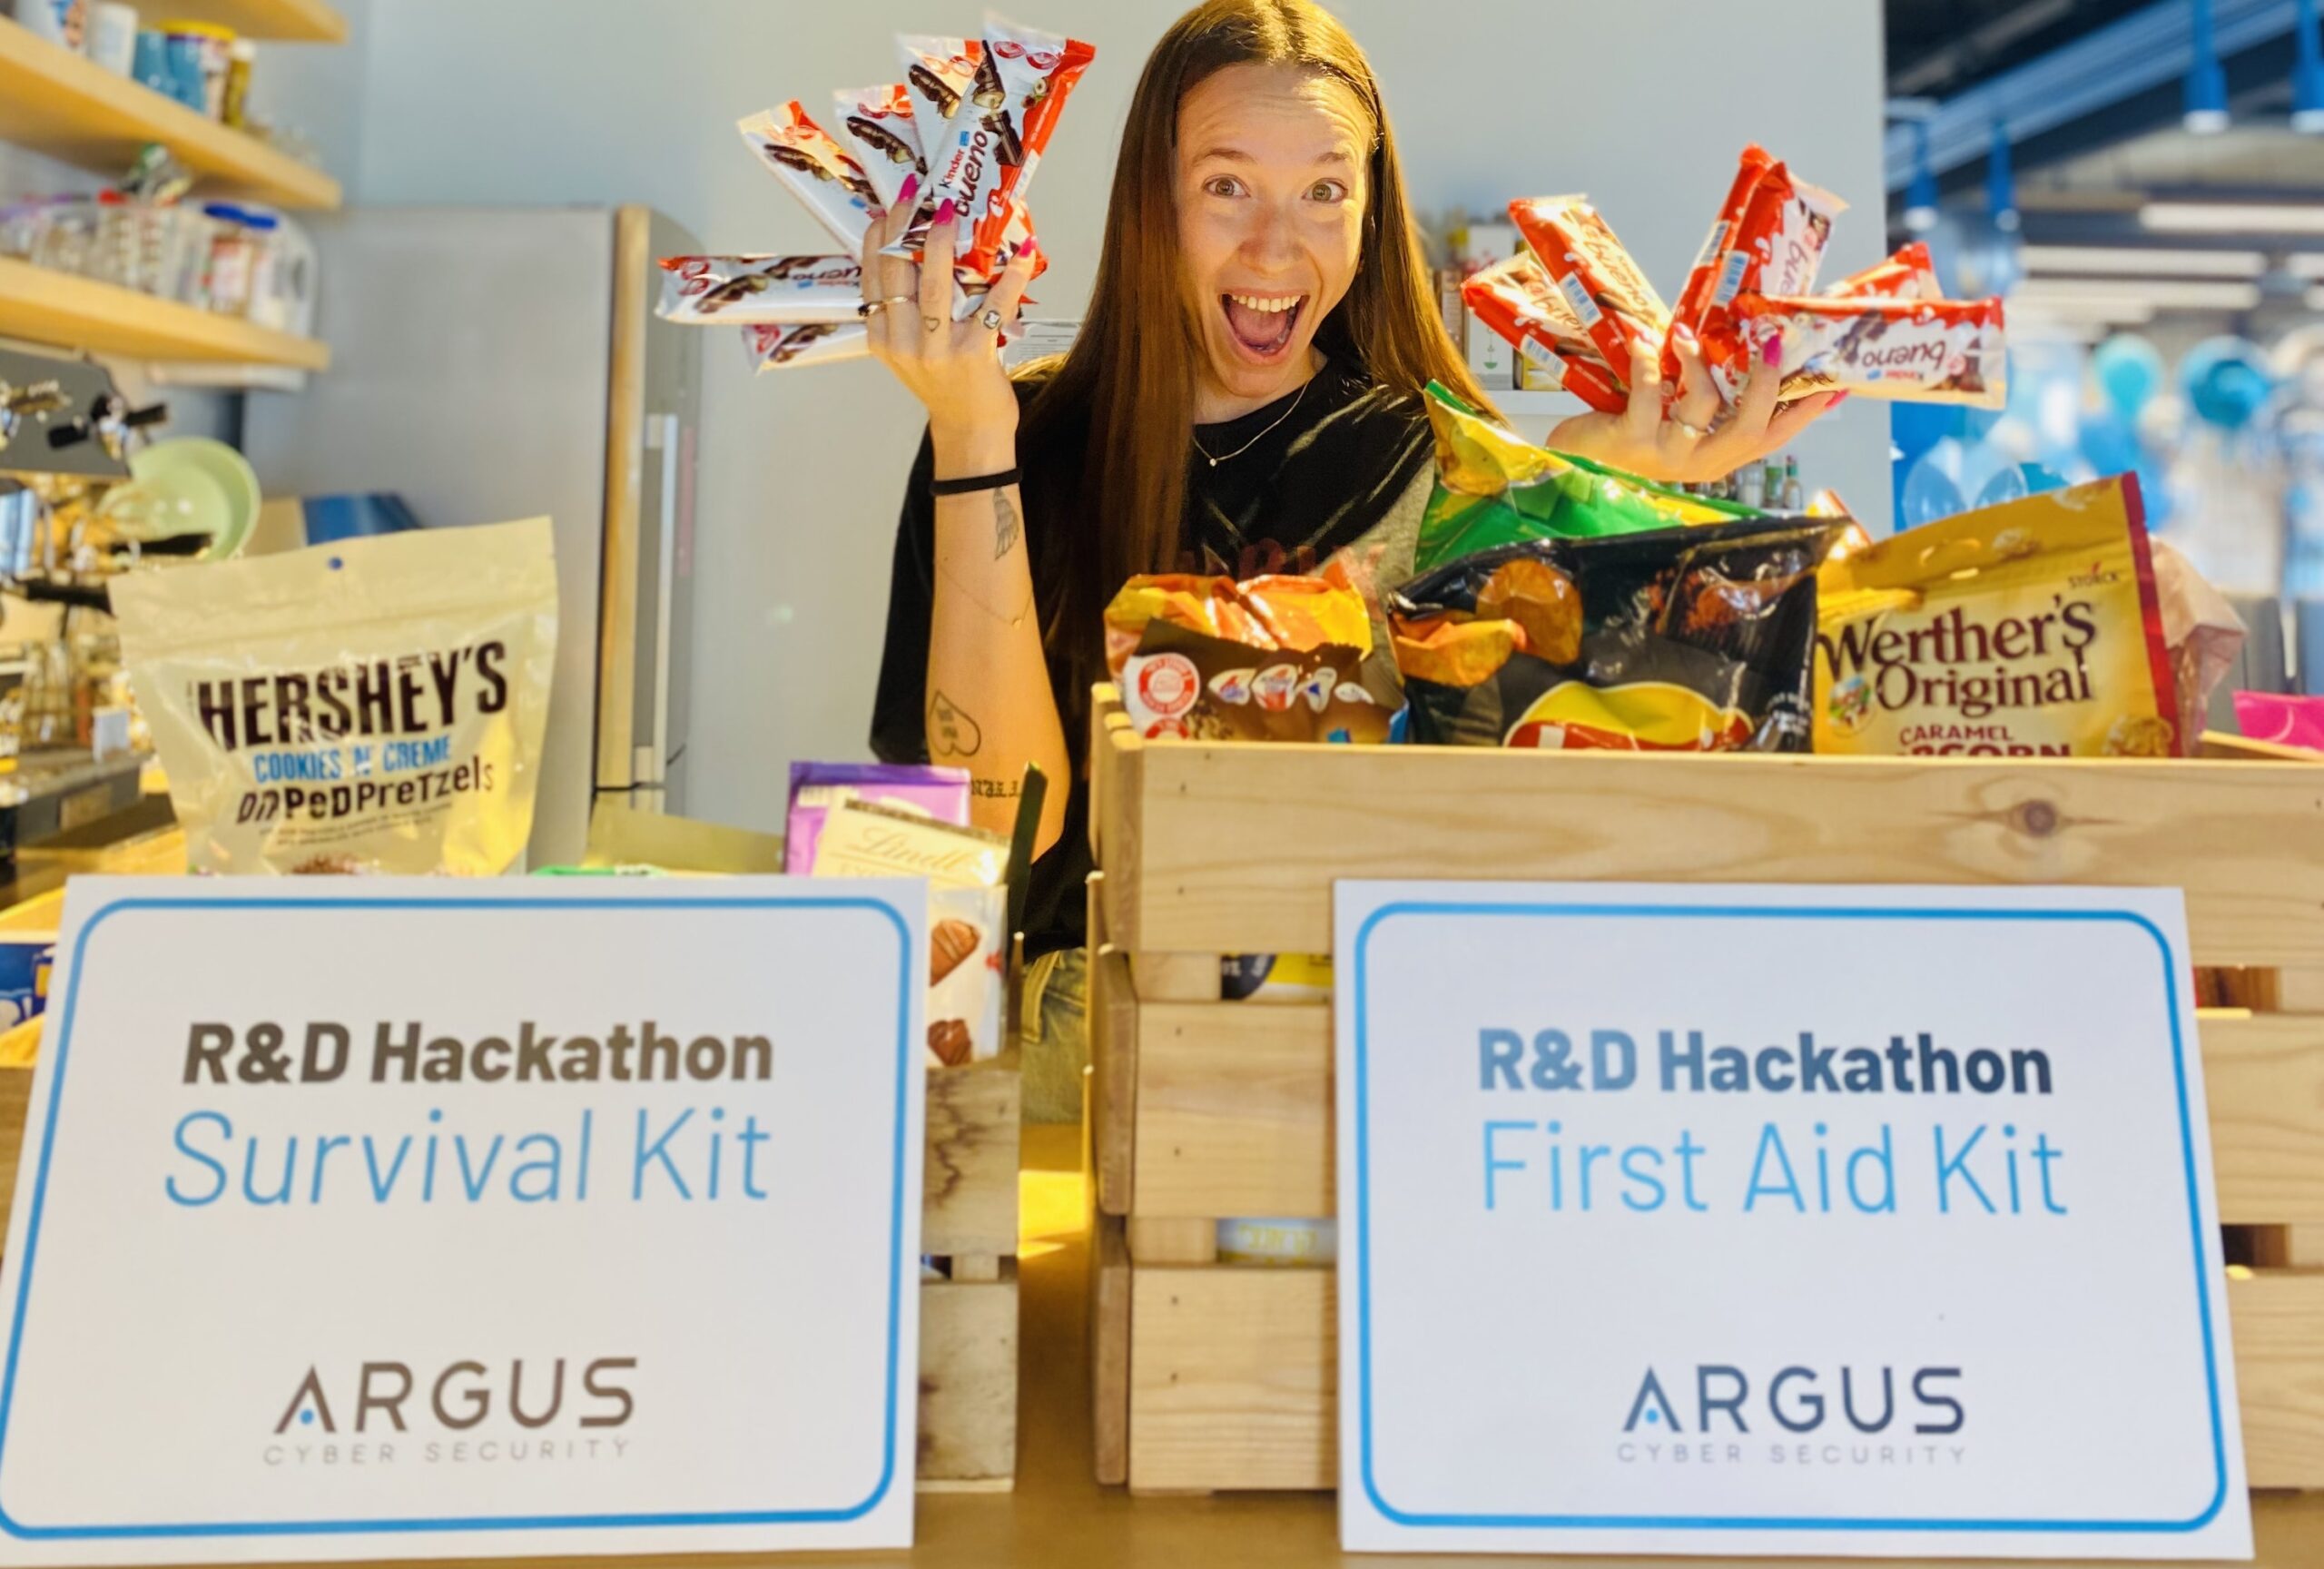 R & D Hackathon survival kit- argus